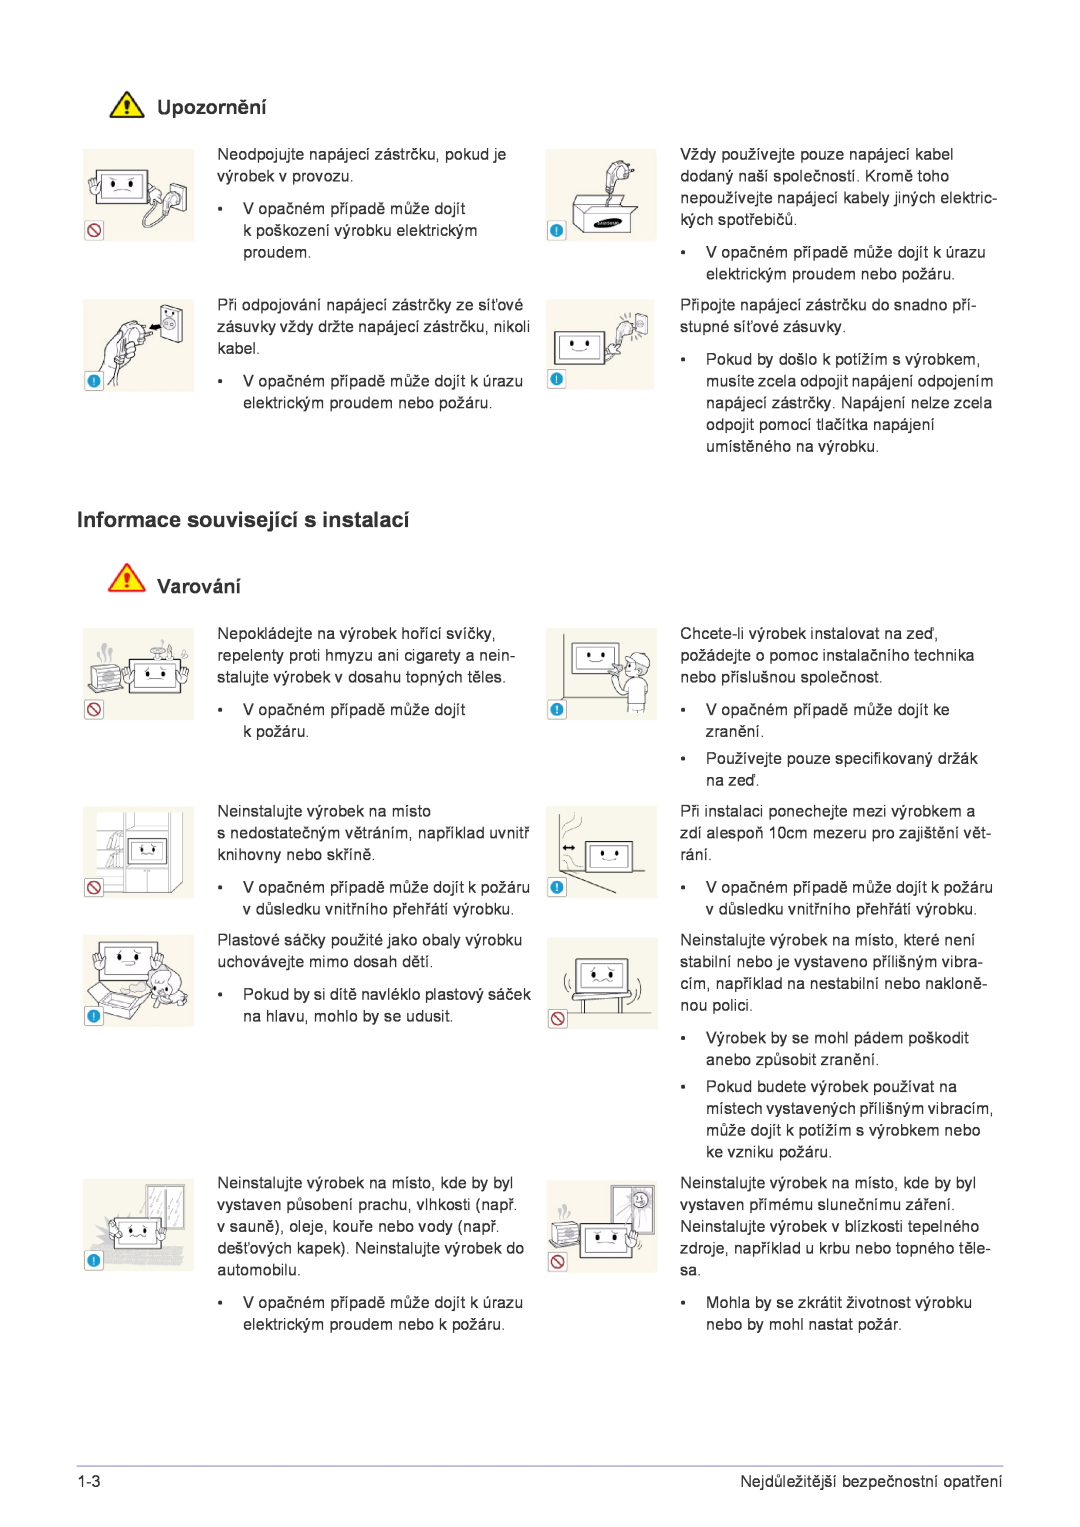 Samsung LS22FMDGF/EN manual Informace související s instalací, Upozornění, Varování 